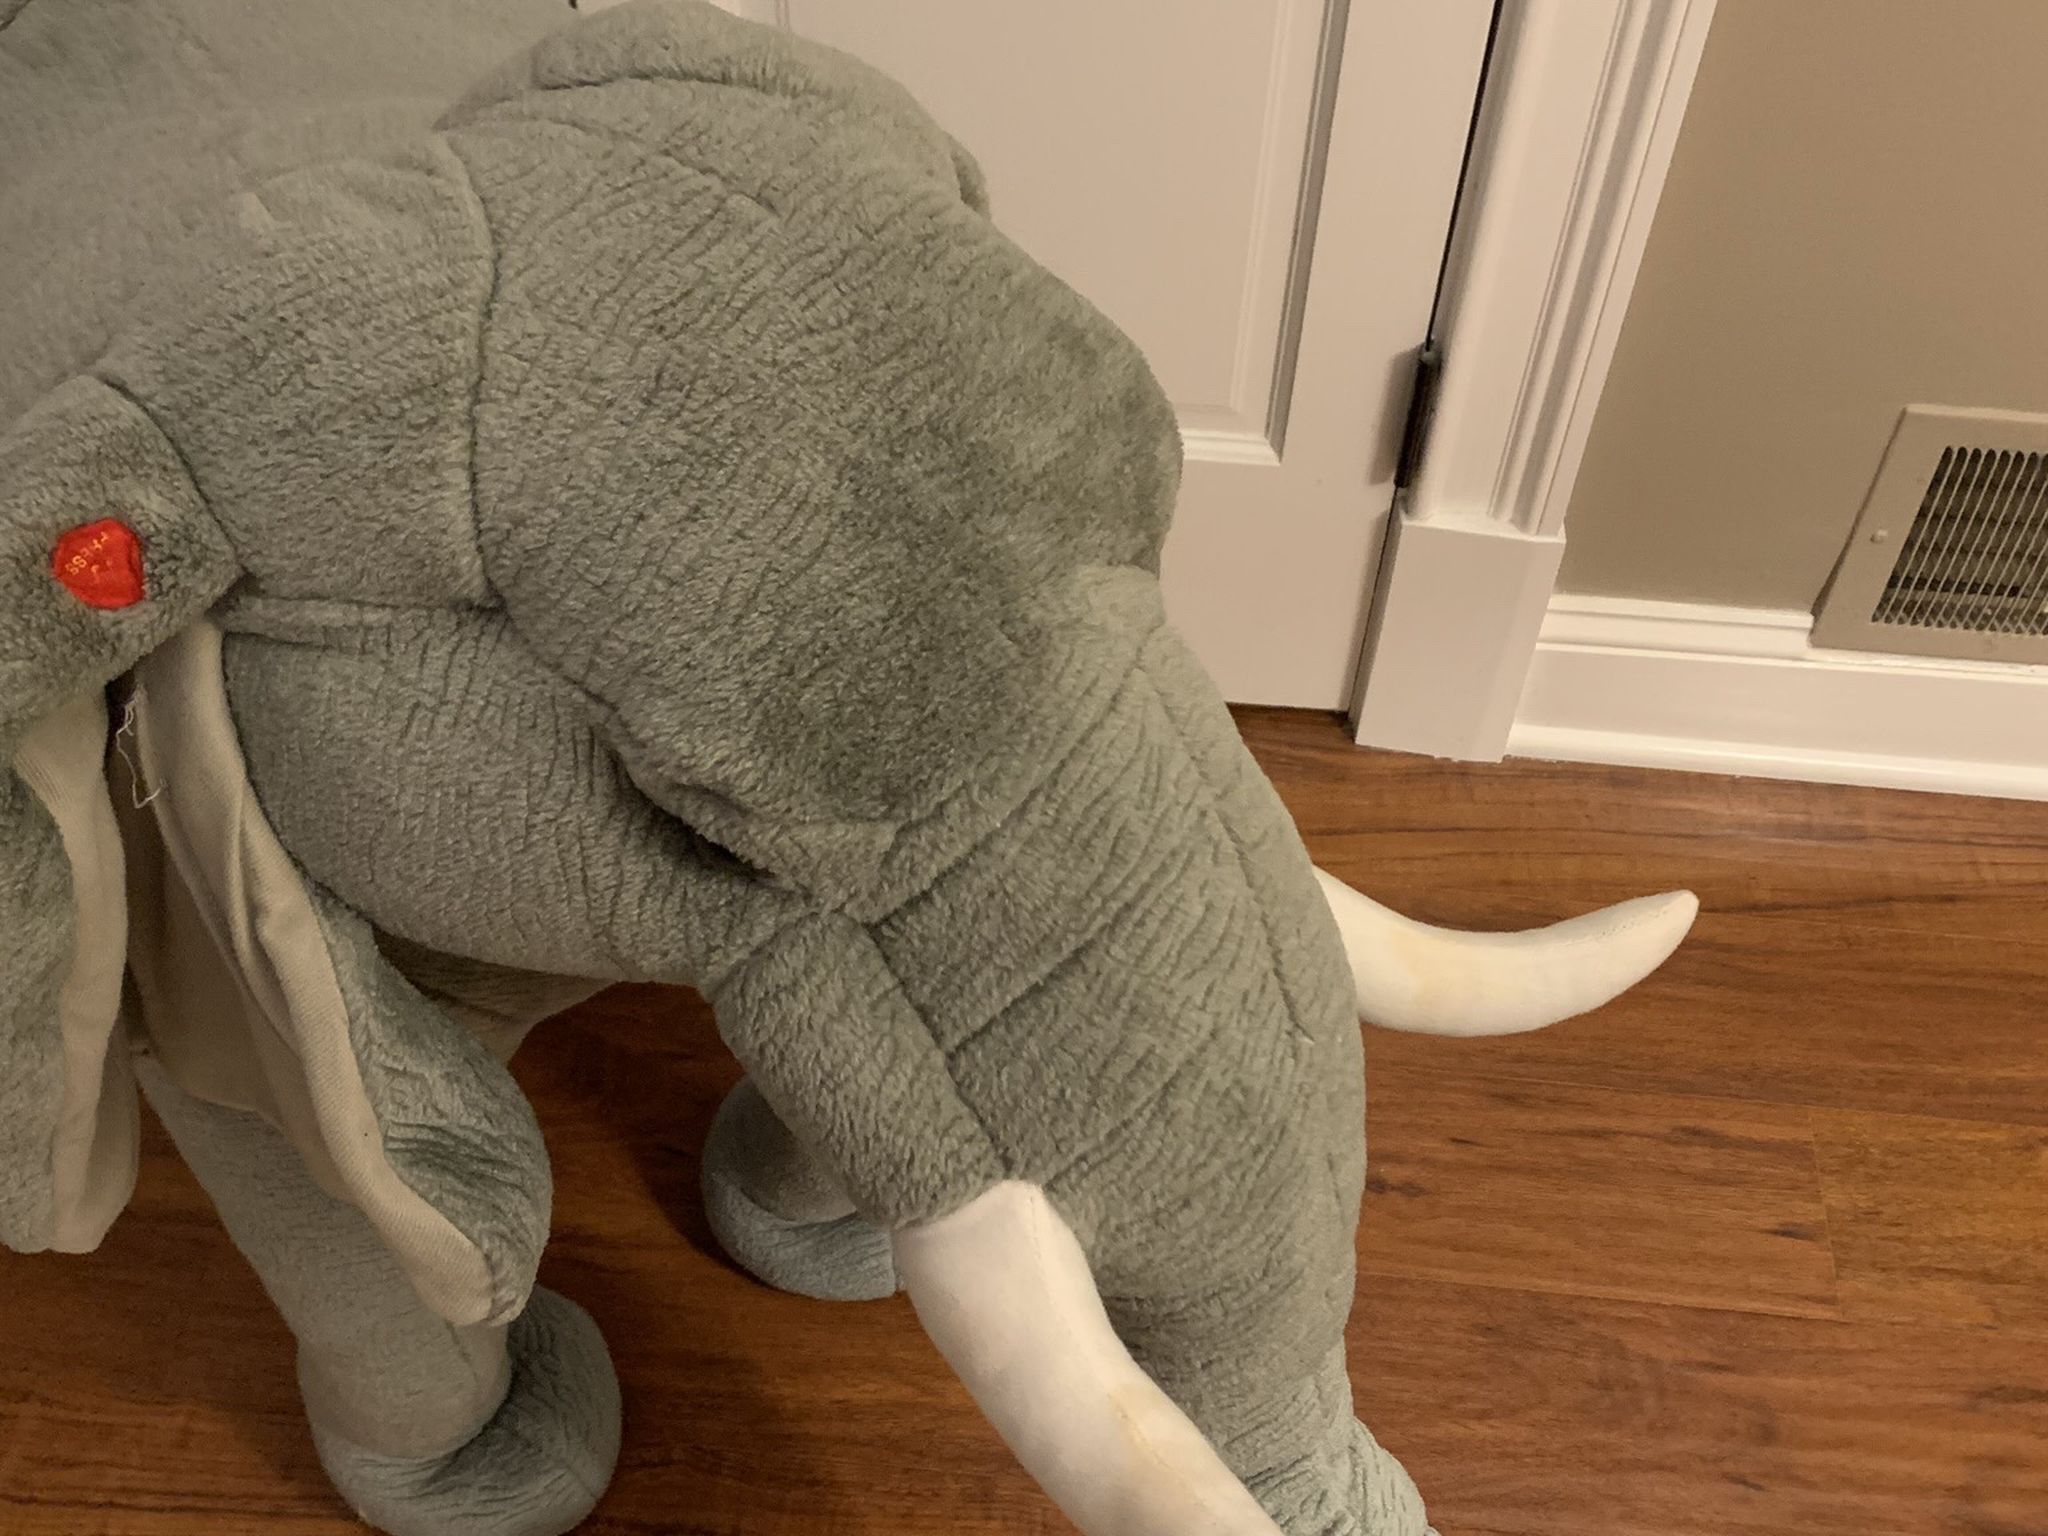 Giant Plush Elephant